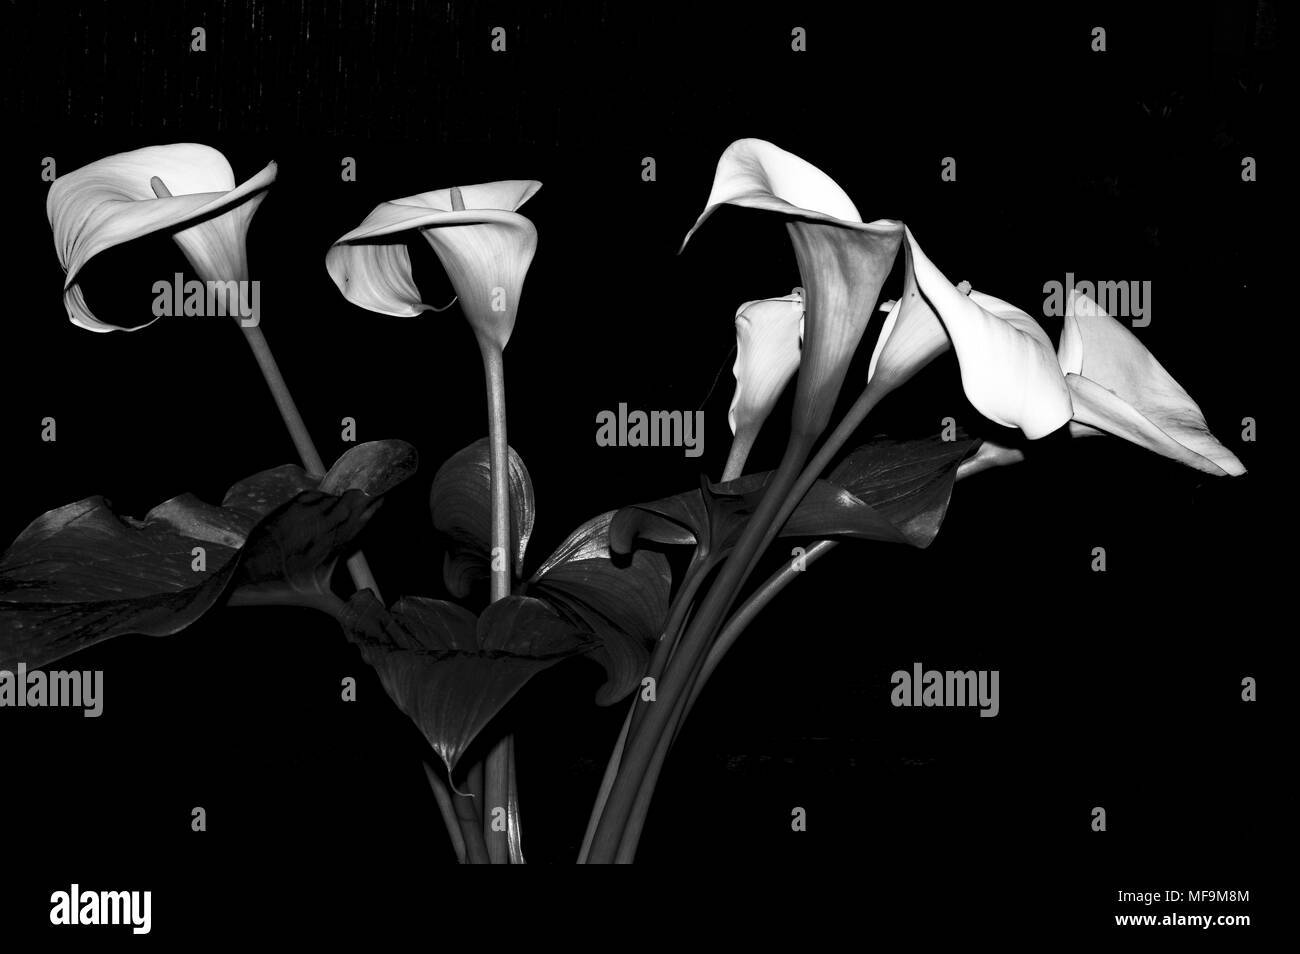 Noir et blanc d'arum close-up Banque D'Images